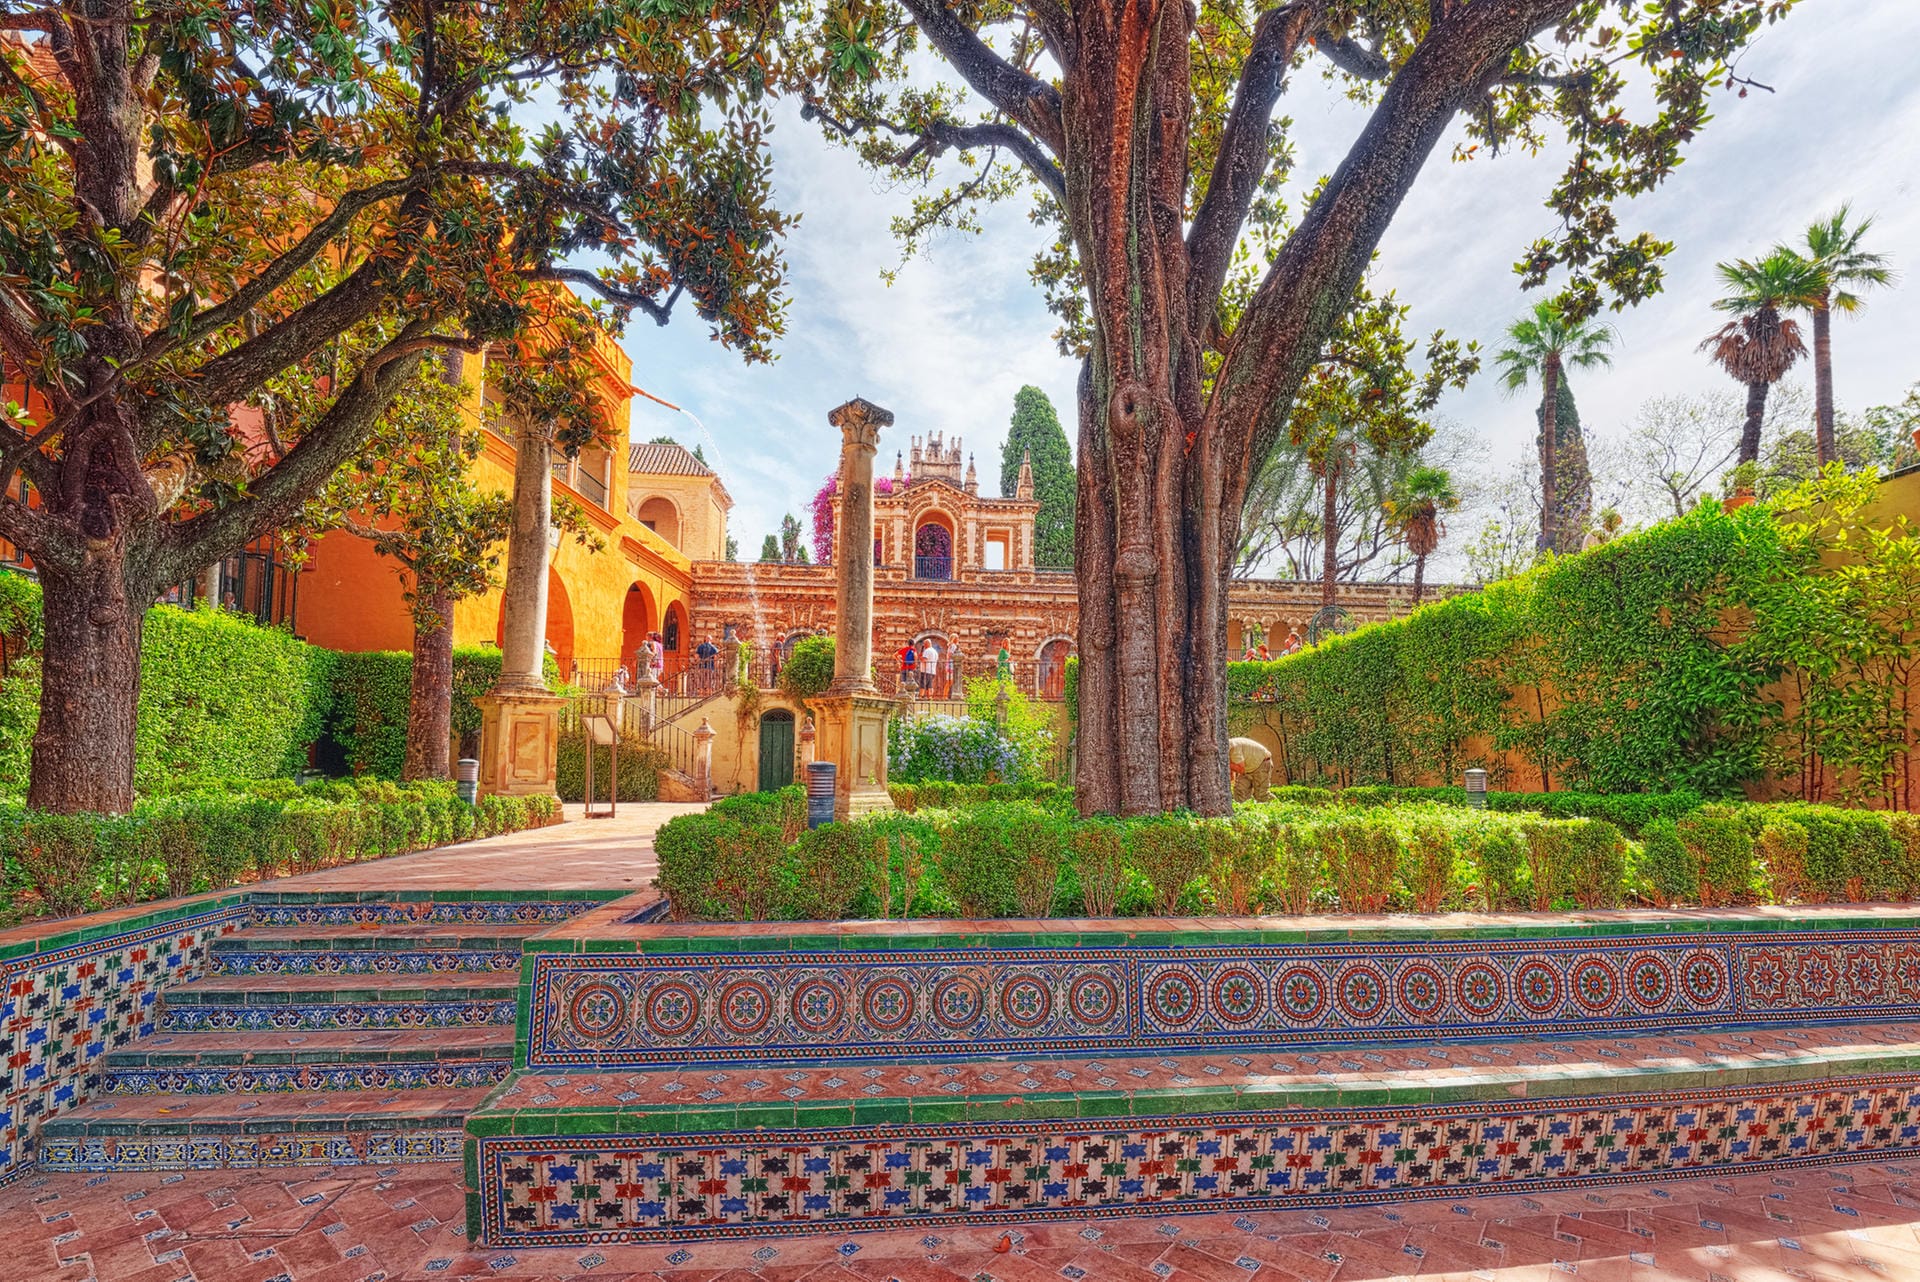 Alcázar de Sevilla: In "Game of Thrones" residieren die Martells in den Wassergärten von Dorne. In der Realität sitzt auch der spanische König immer wieder in den Anlagen der Alcázar de Sevilla.